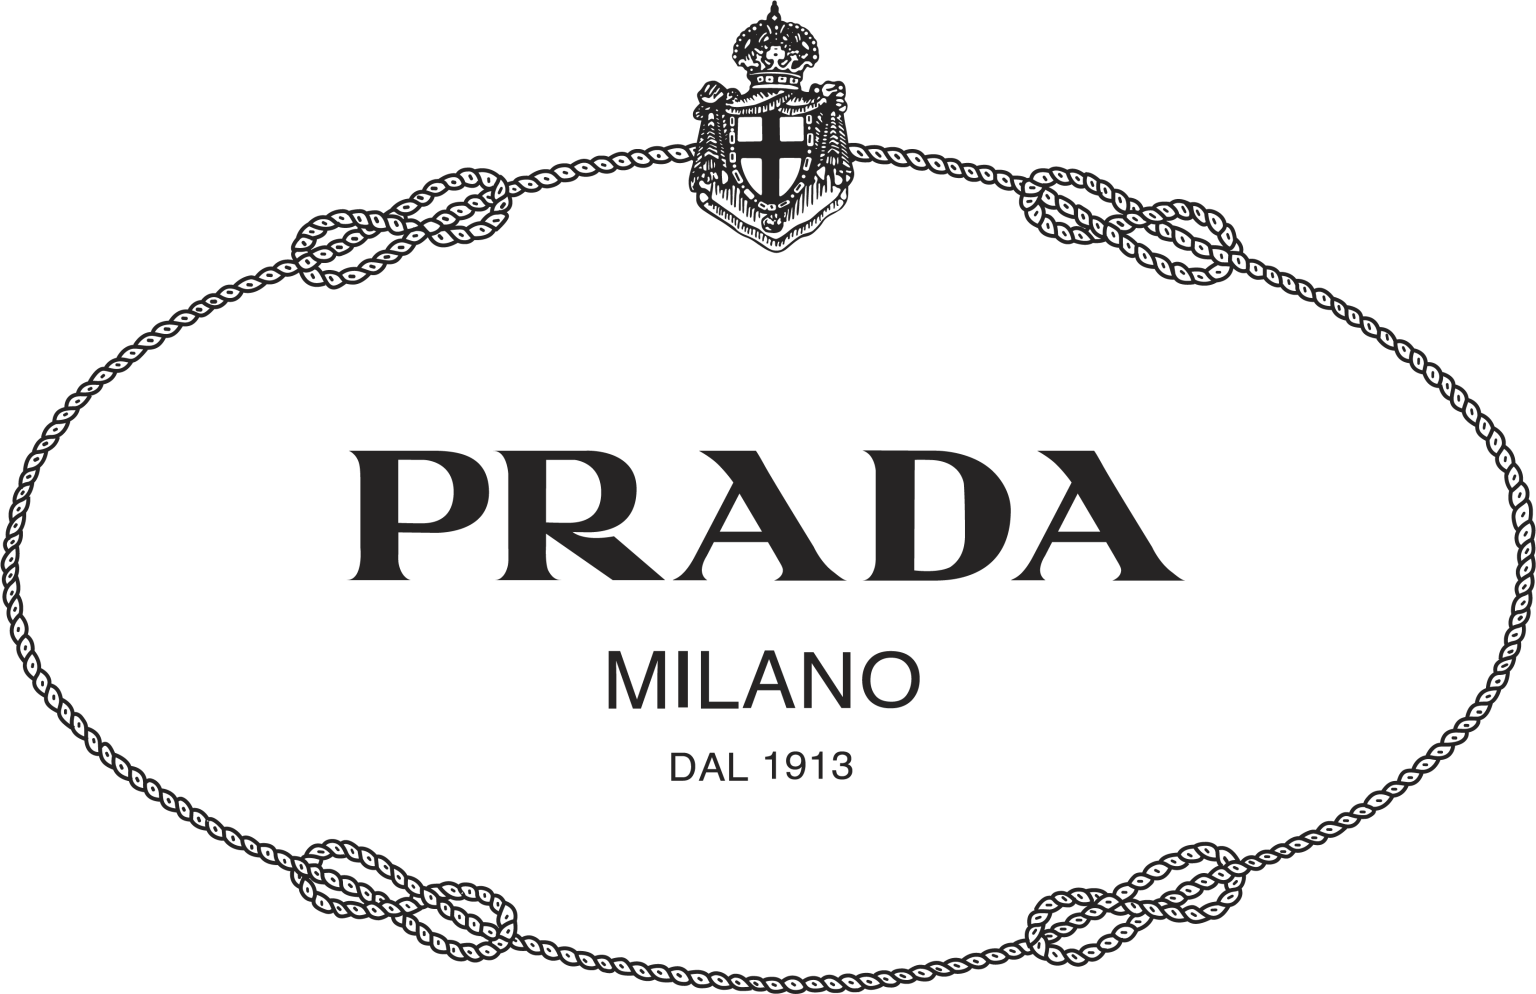 Prada logo - Download Free Png Images